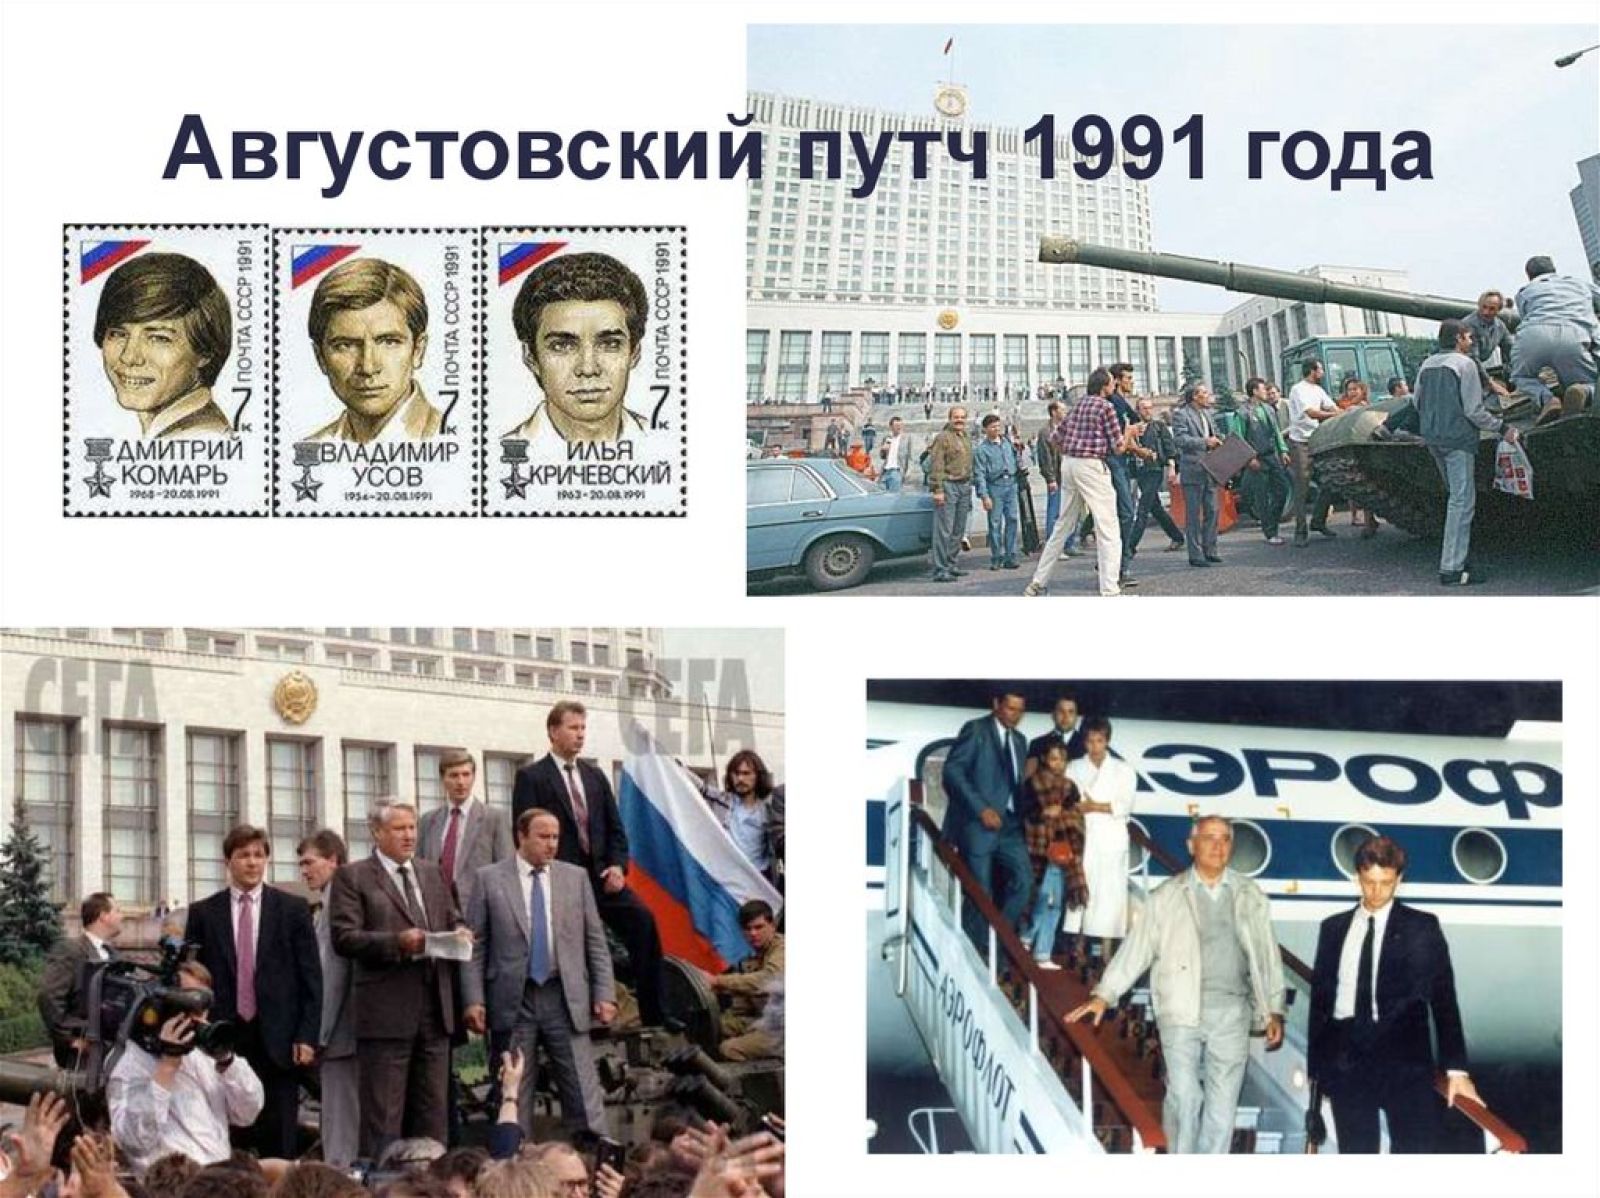 Август 1991 что произошло. ГКЧП август 1991. Ельцин 1991 ГКЧП. Путч ГКЧП 1991. Путч в августе 1991 распад СССР.